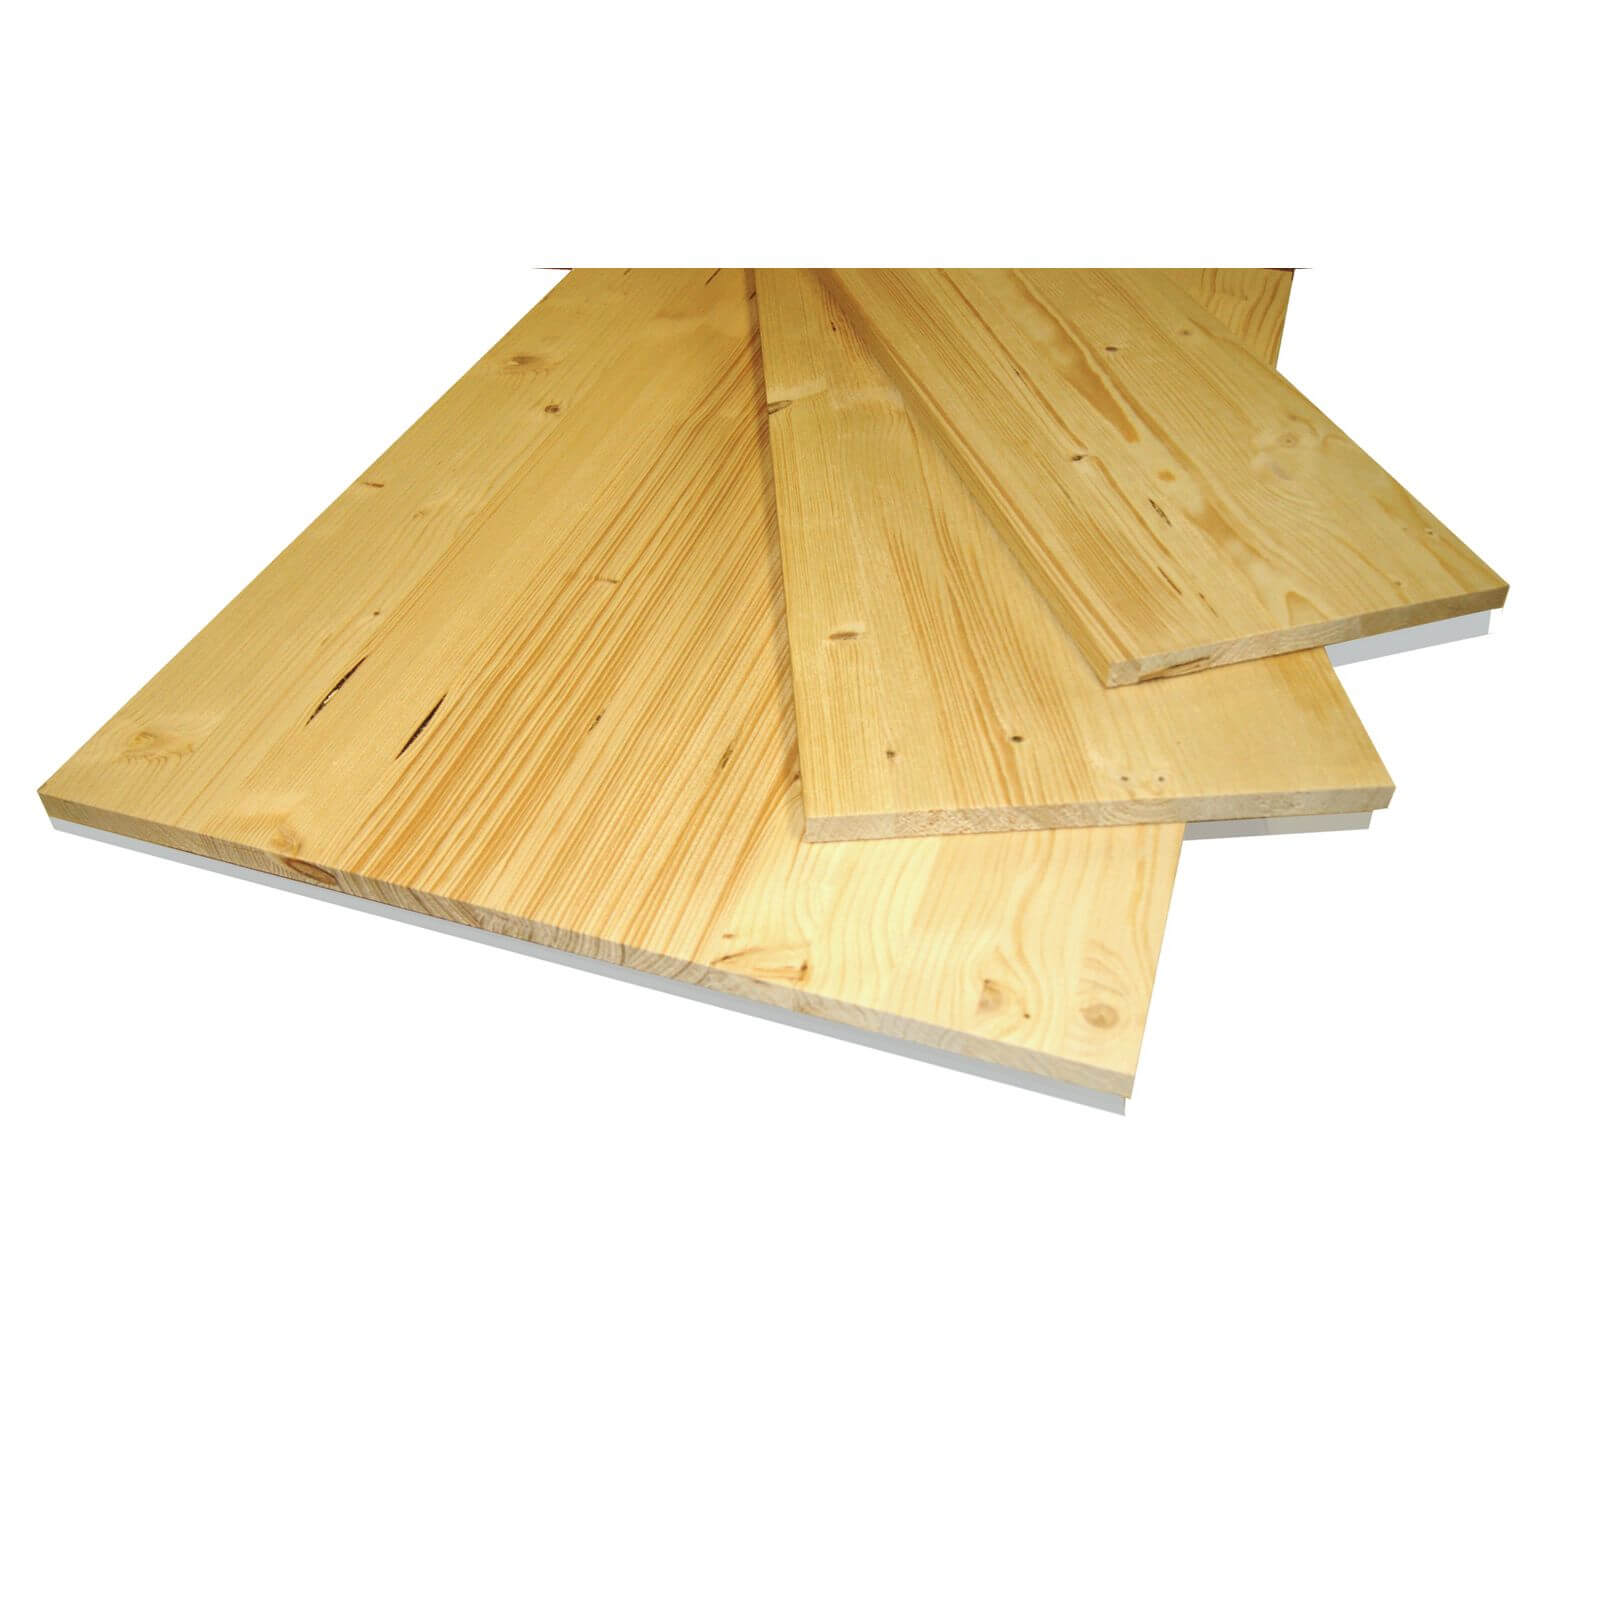 Metsa Wood Solid Spruce Wooden Panel Board 1.15m (18 x 500 x 1150mm)